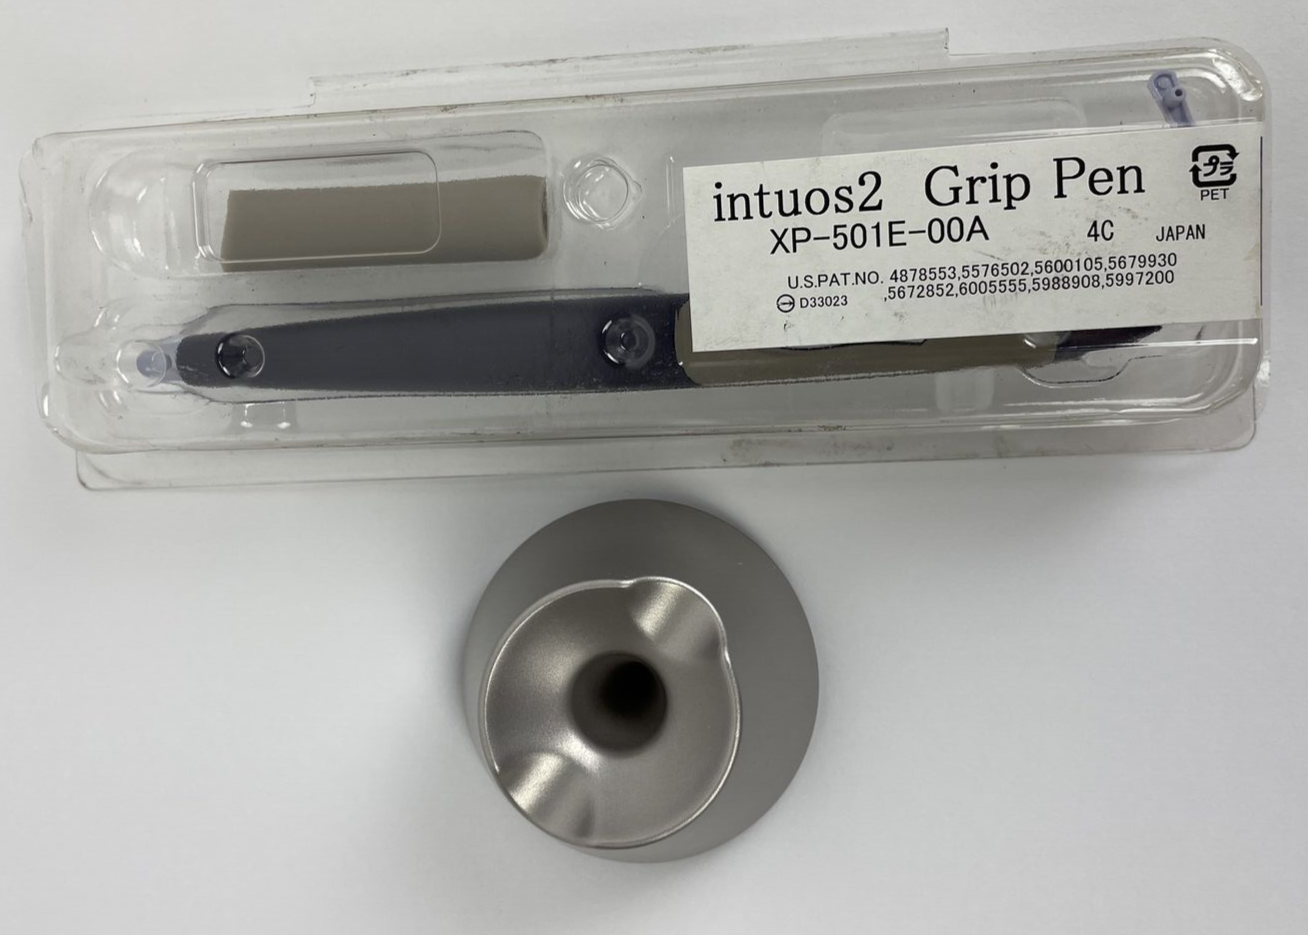 Wacom intuos2 Grip Pen Stylus XP-501E-00A w 4 extra Nibs, Button, Rubber Handle - $99.99